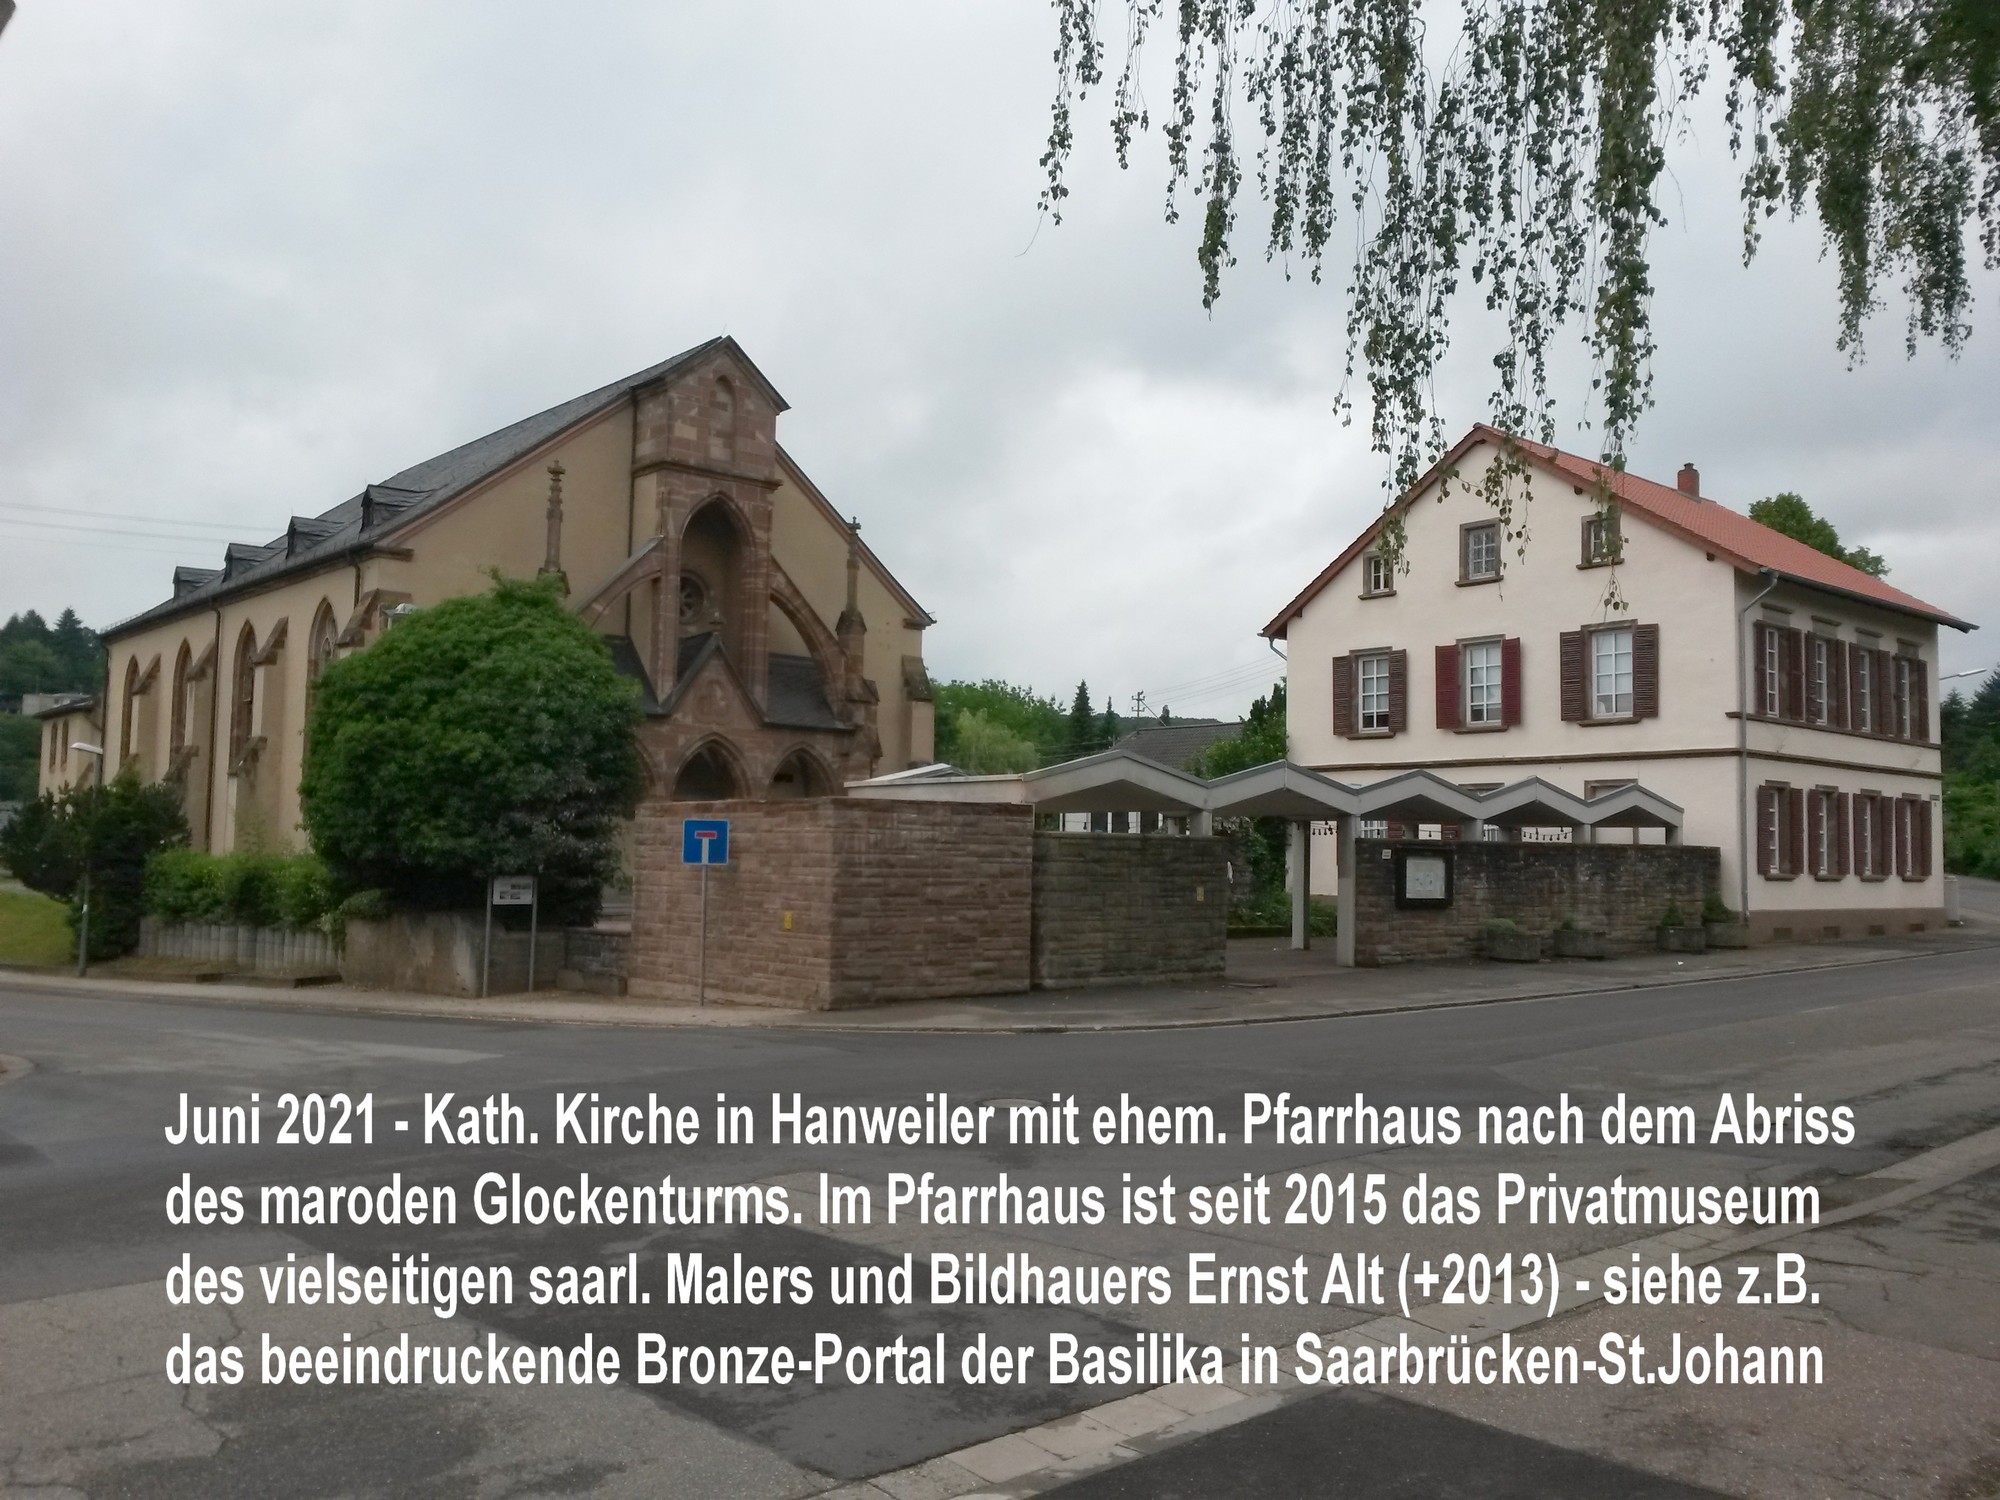 Katholische Pfarrkirche St.Walfridus in Hanweiler, nach Abriss des Glockenturms 2021